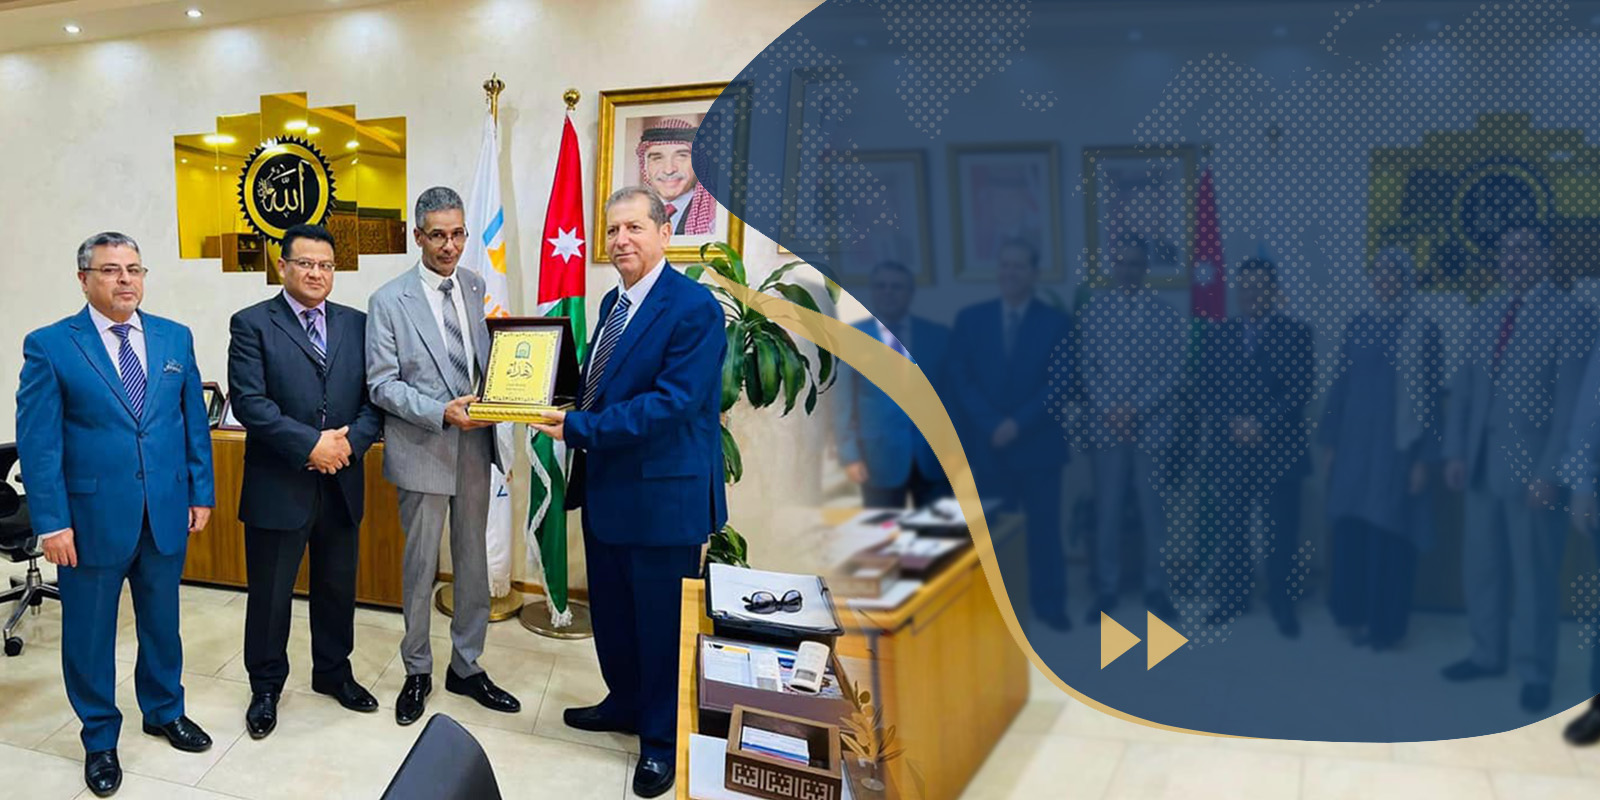 زيارة عمل ومباحثات رسمية بين جامعة سرت وجامعة عمان العربية بالأردن.